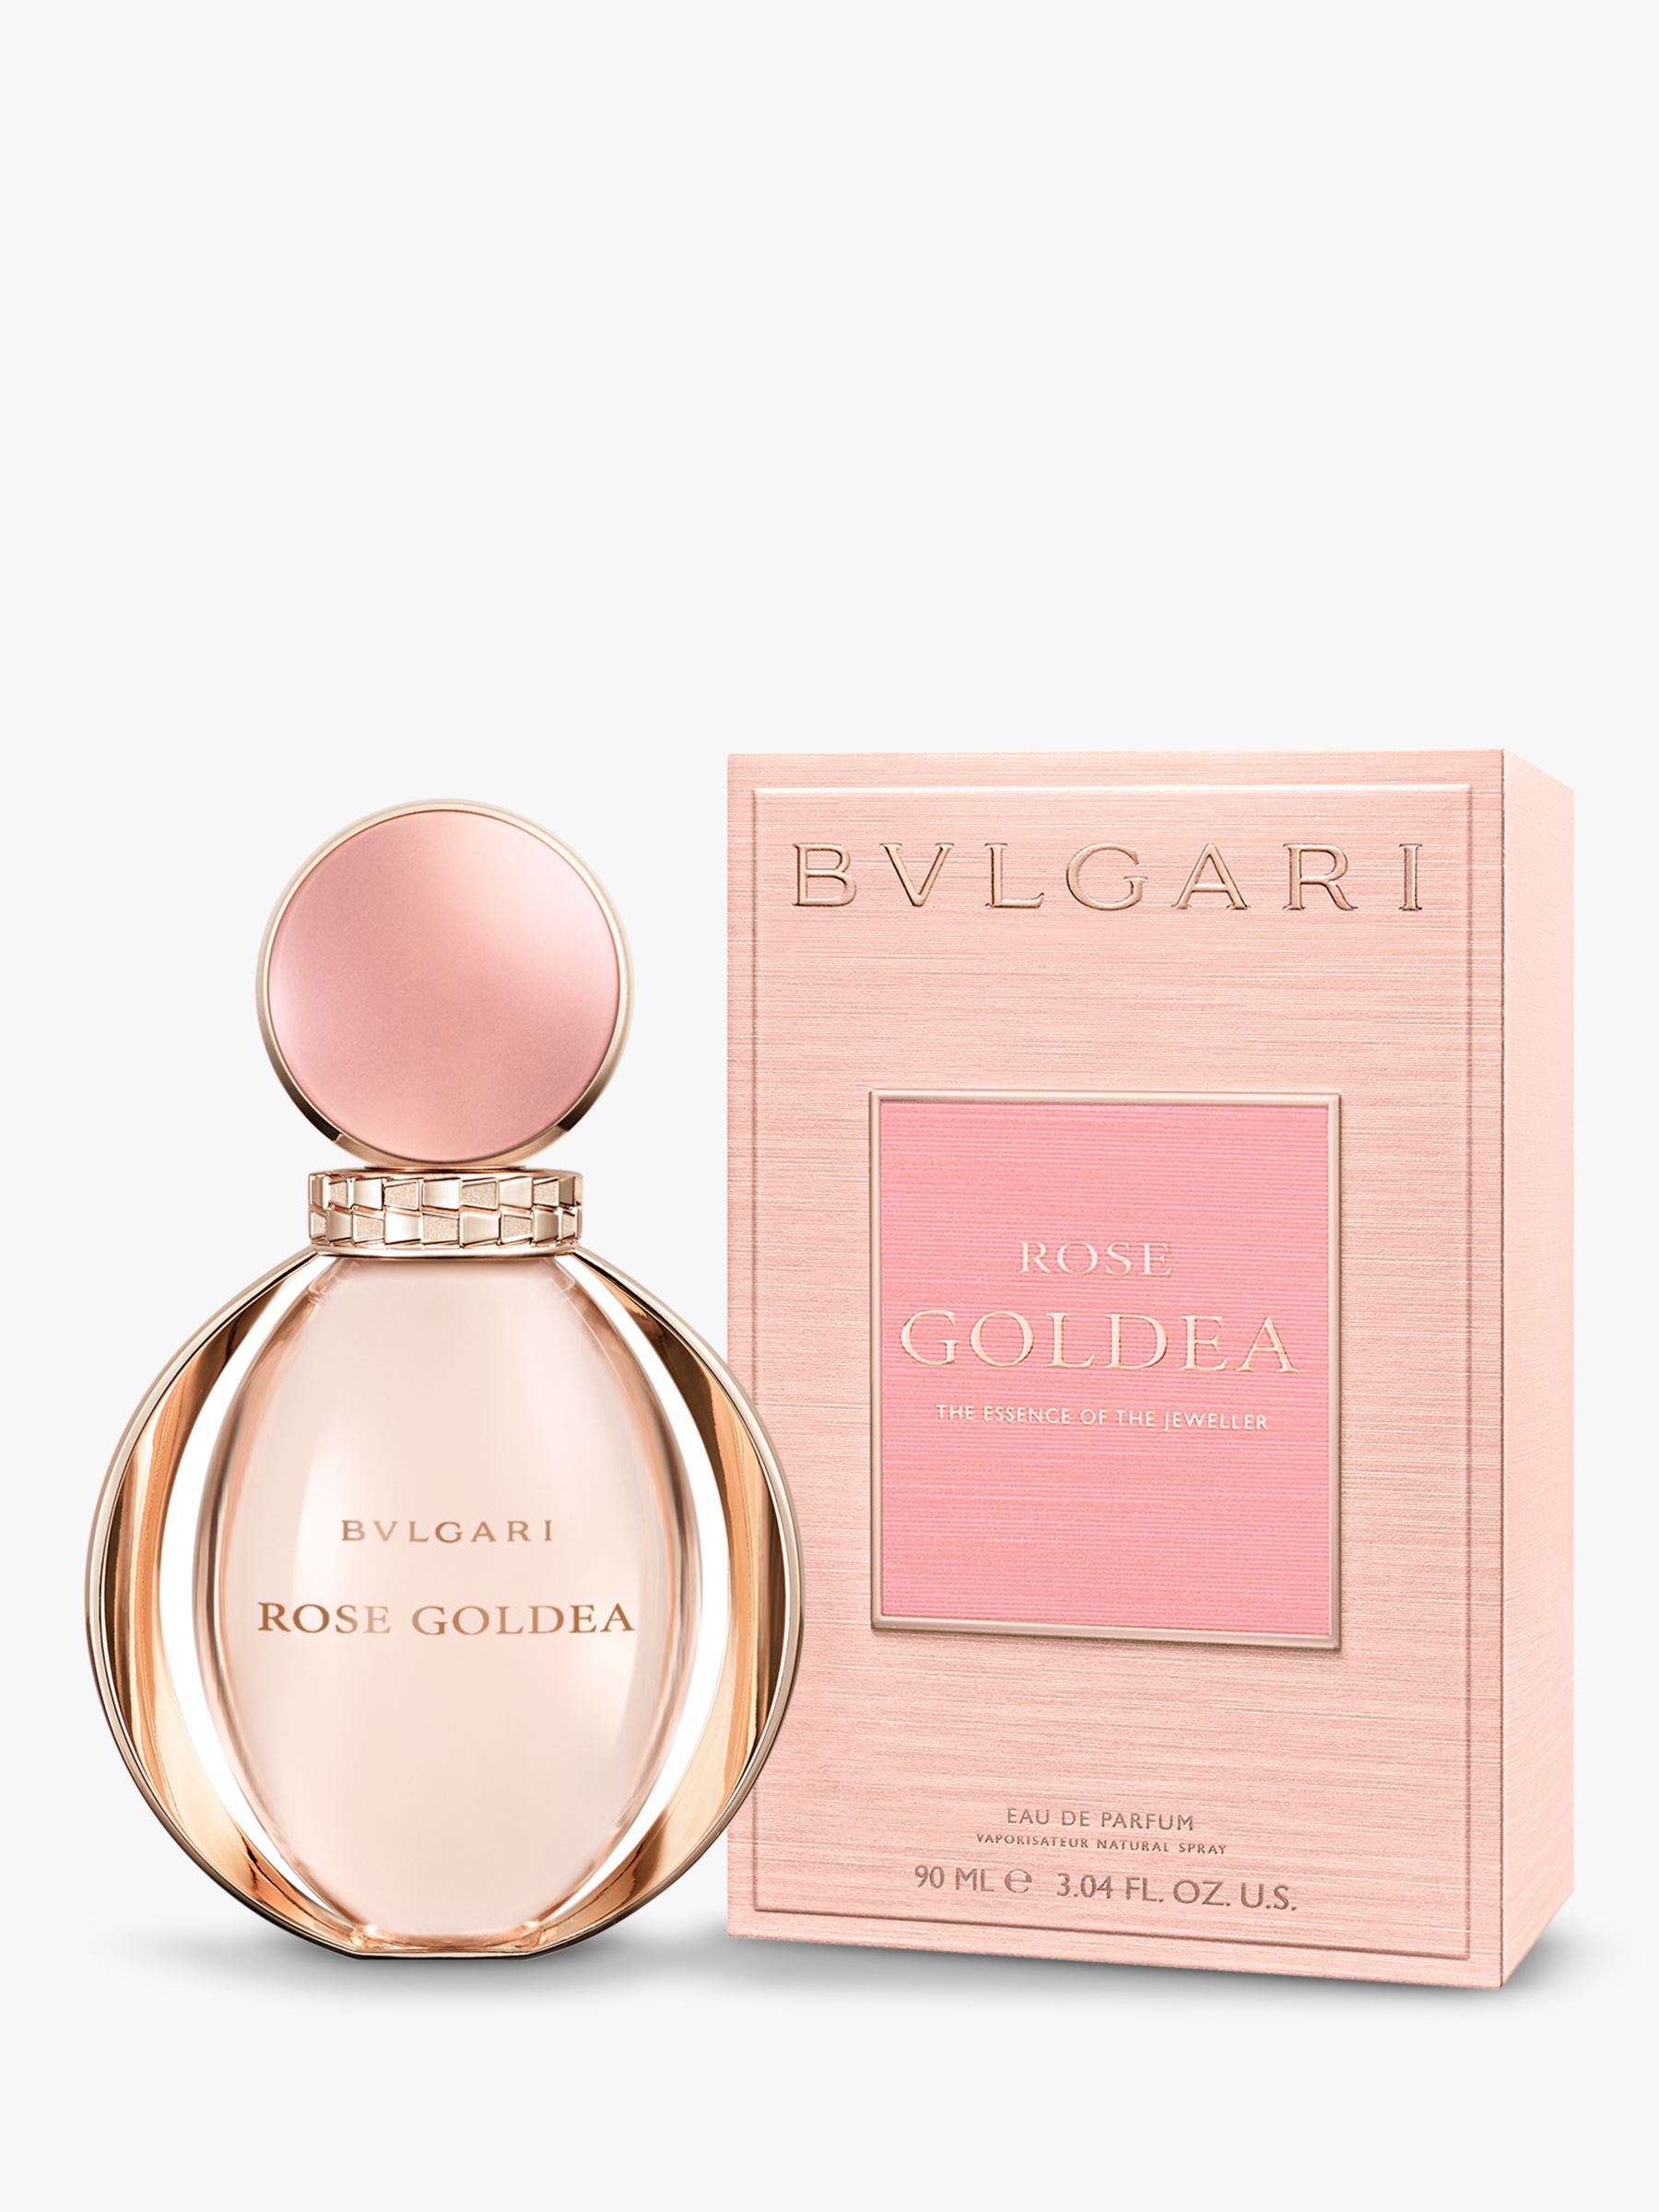 Bulgari Rose Goldea Eau de Parfum, 90ml 2